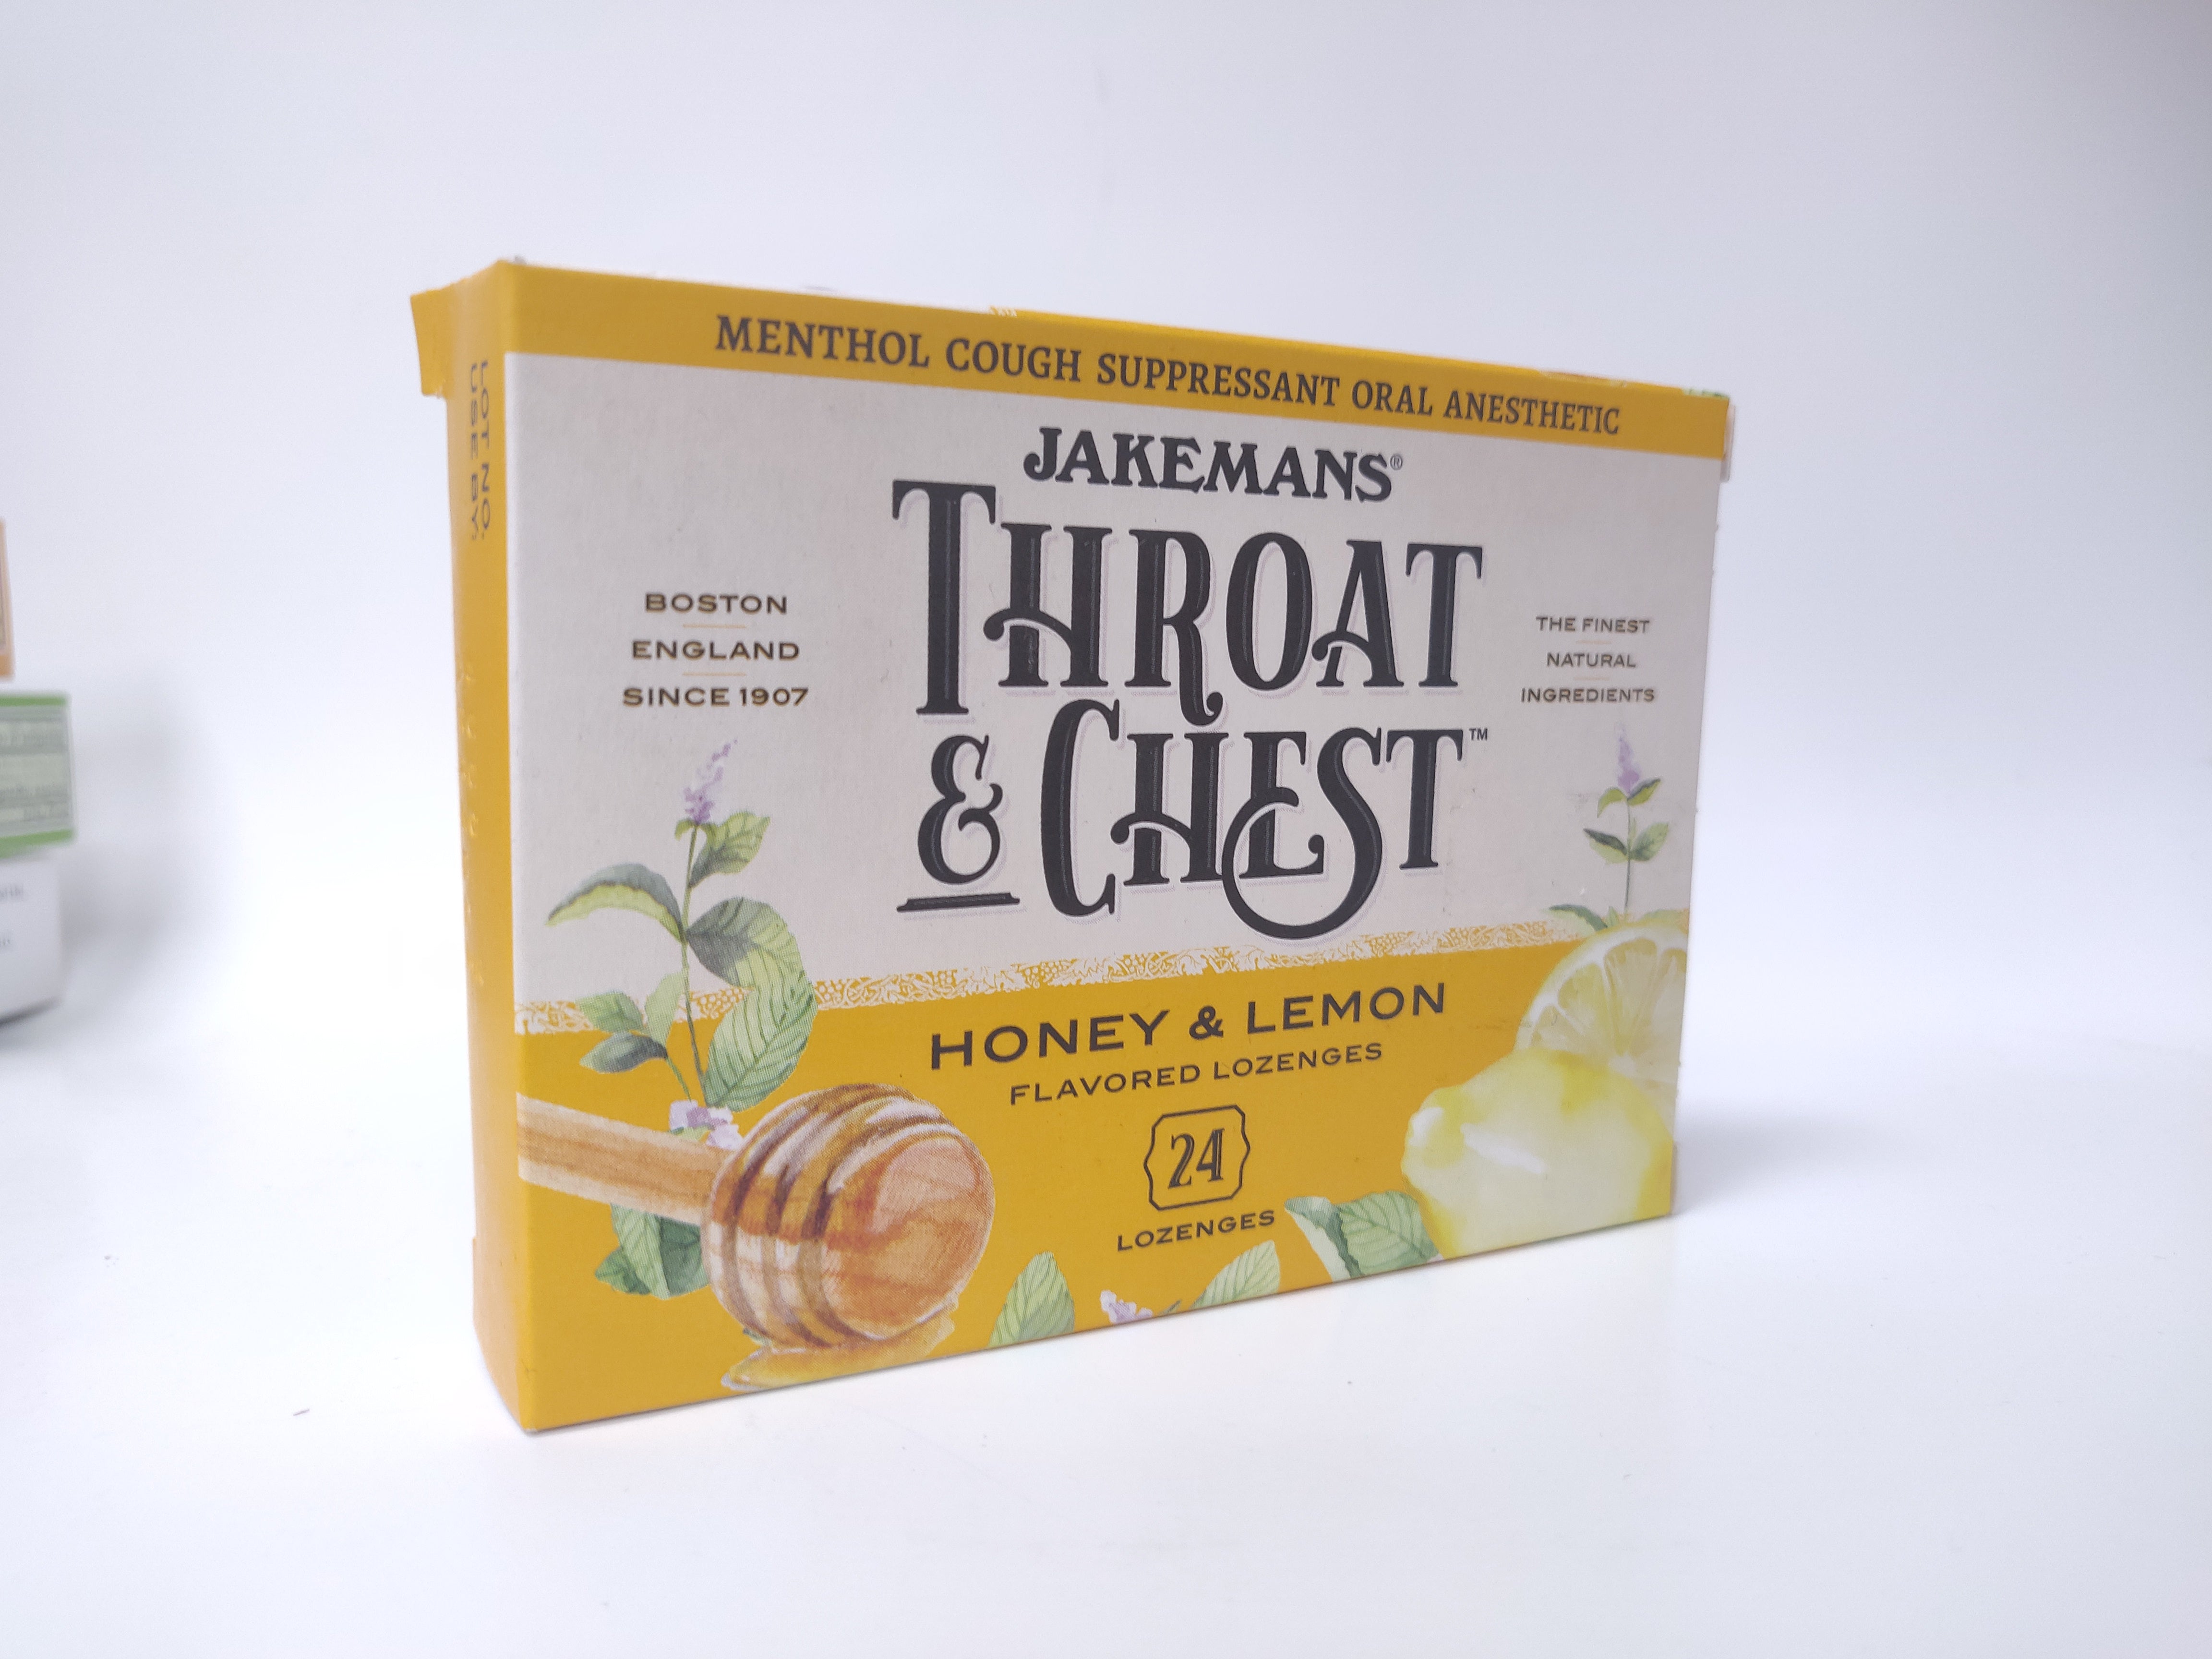 Jakemans Throat & Chest Honey & Lemon Flavored Lozenges - 24 ct*